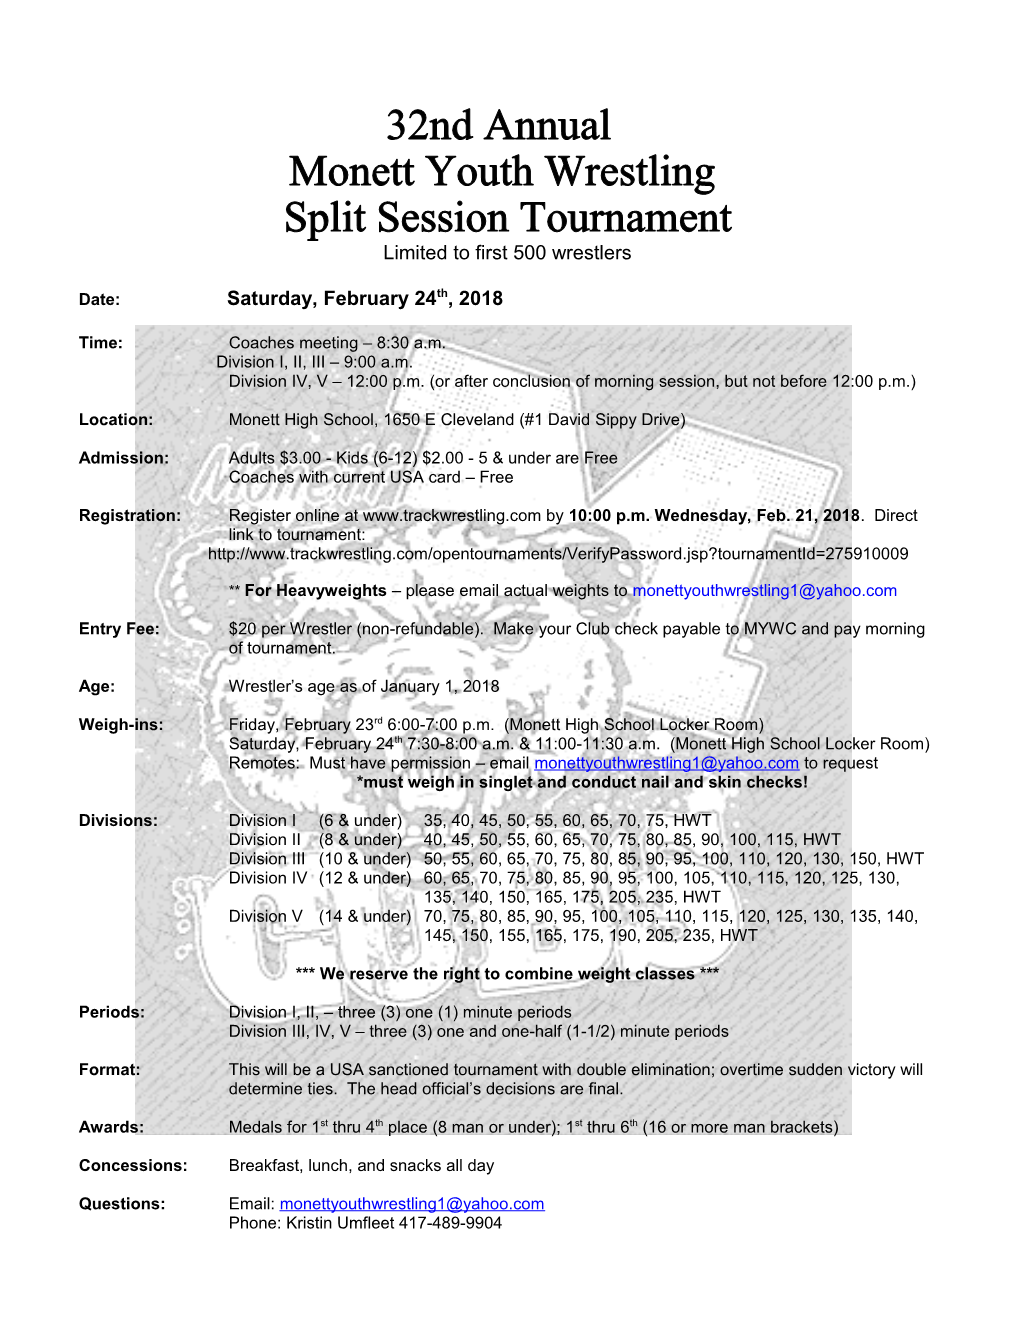 Monett Youth Wrestling